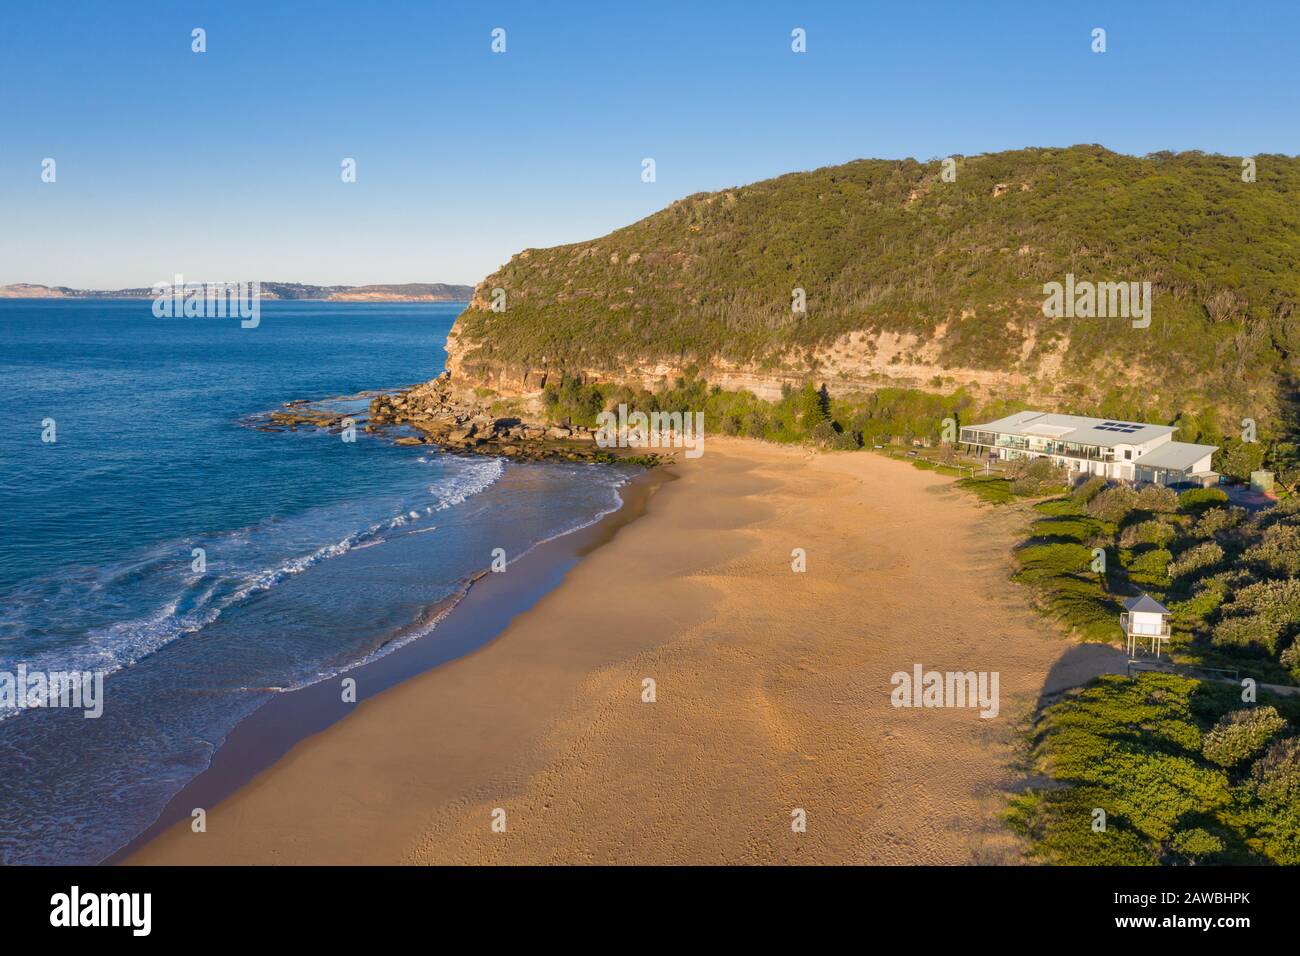 Blick auf den schönen Putty Beach in Killcare an der zentralen Küste von NSW. Putty Beach - NSW Australien Stockfoto